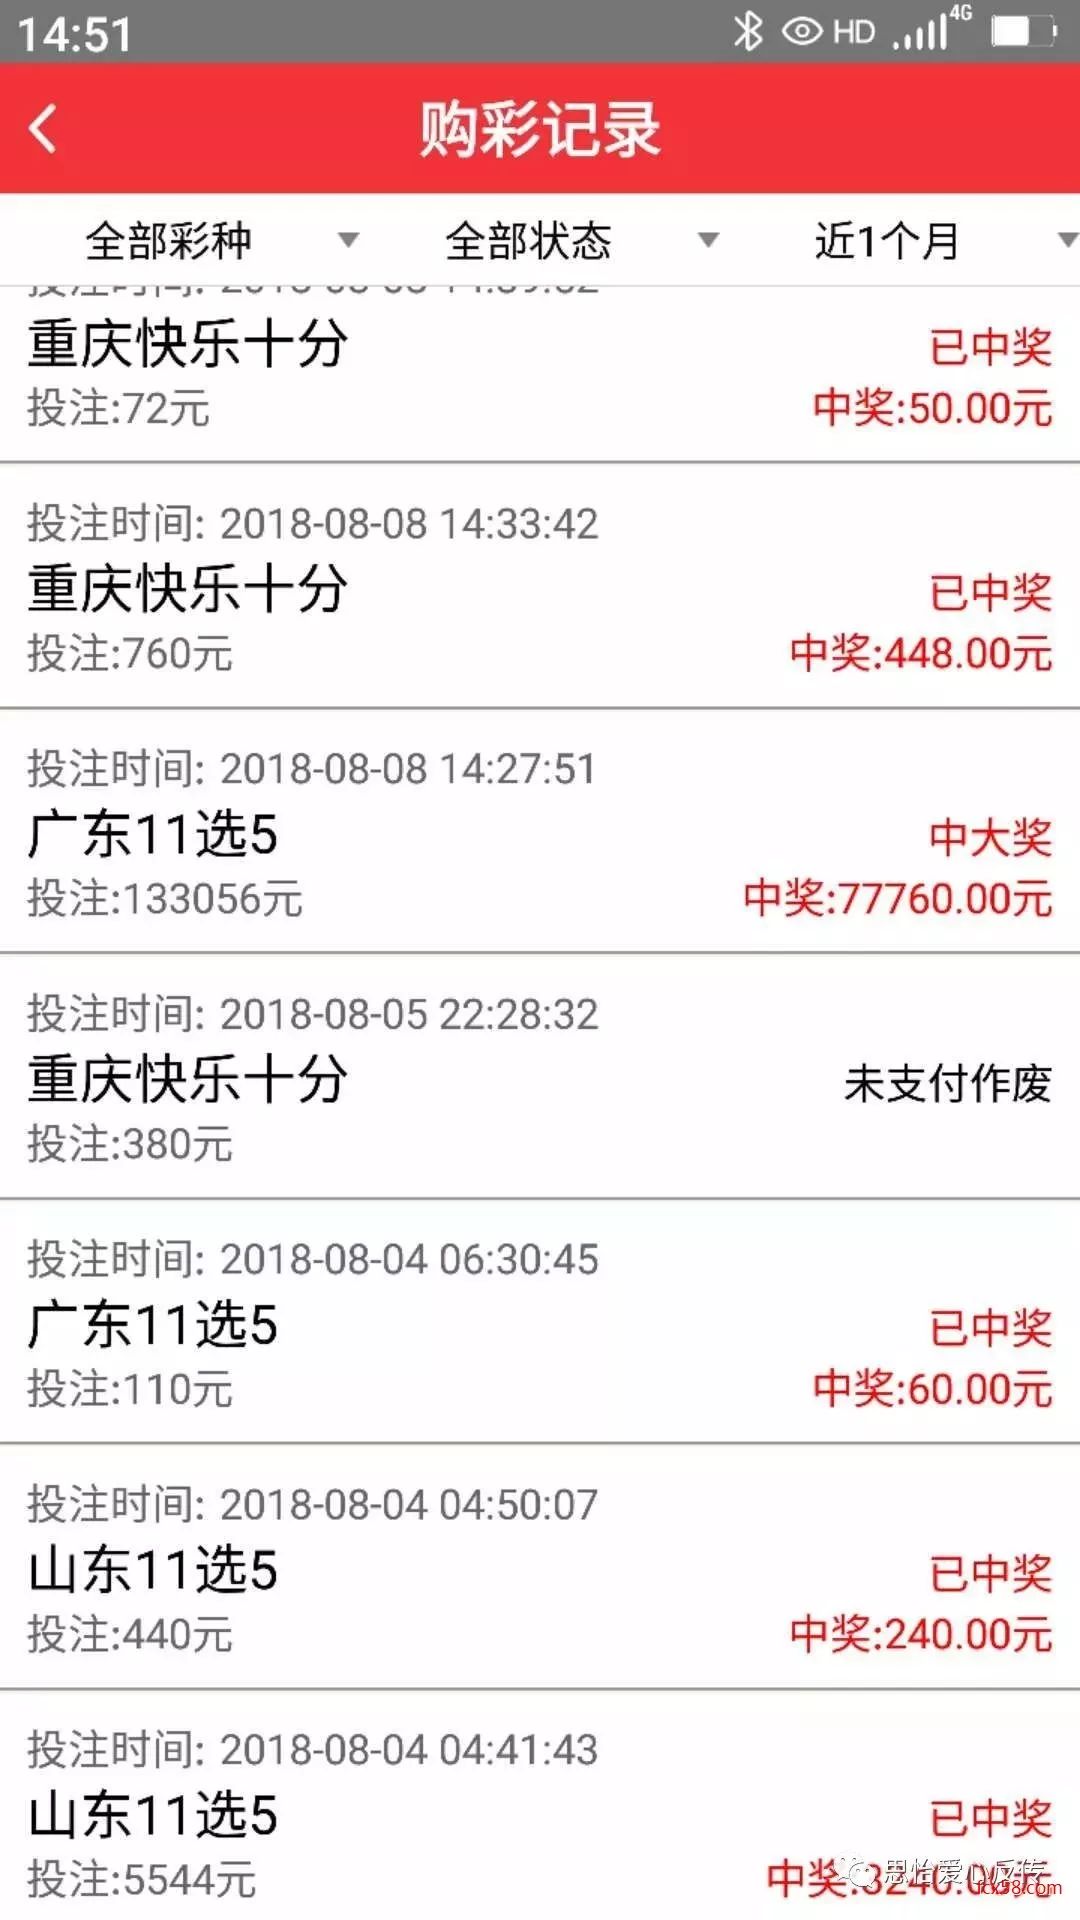 中国比特币挖矿教程_中国禁止比特币挖矿通告_sitebitcoin86.com 中国比特币挖矿网站